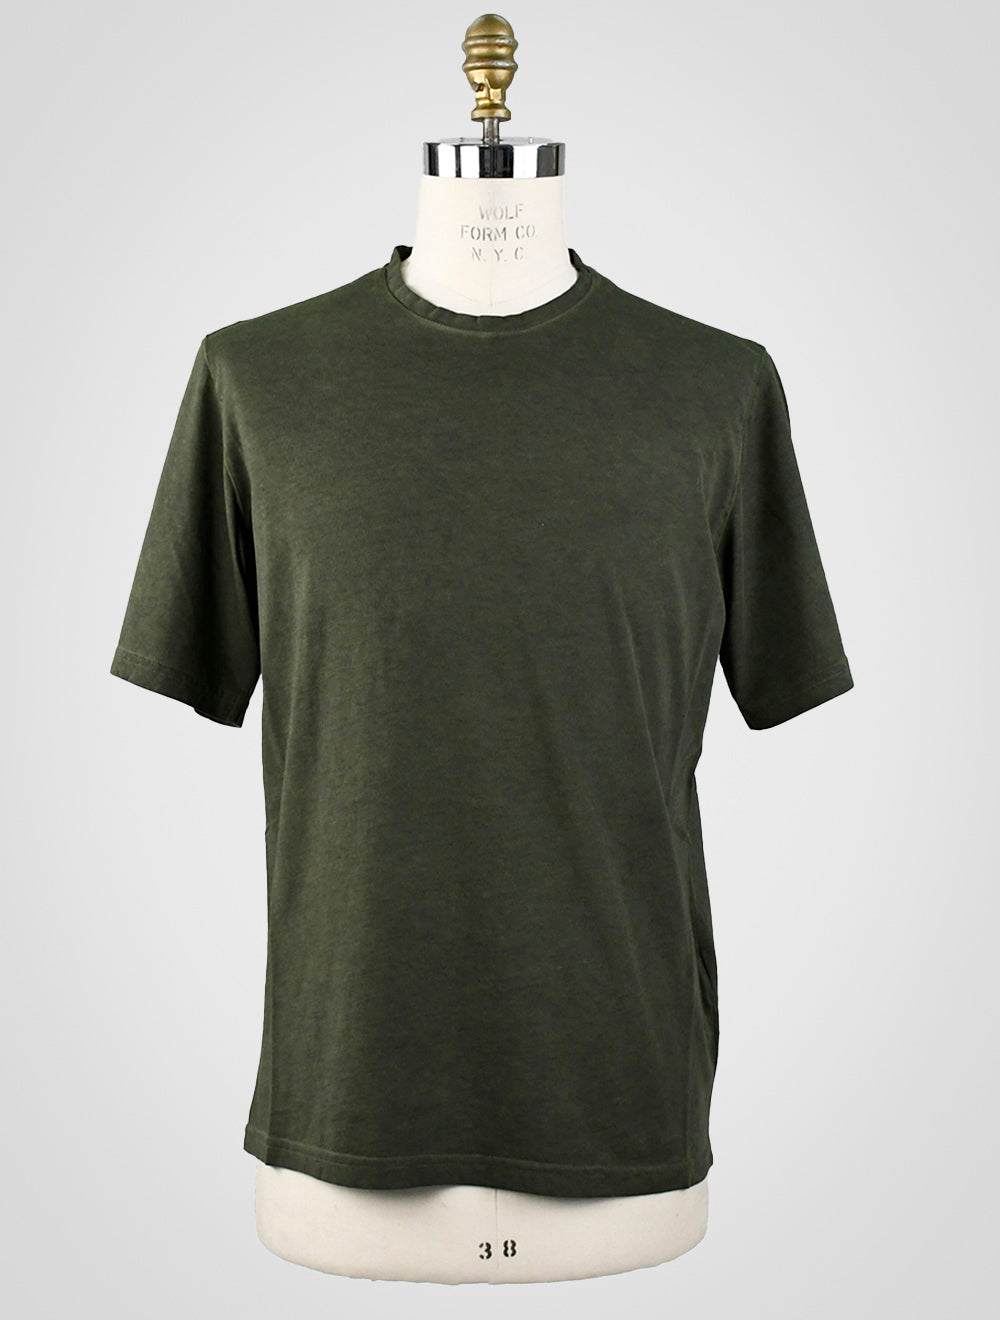 Premiata T-Shirt aus grüner Baumwolle